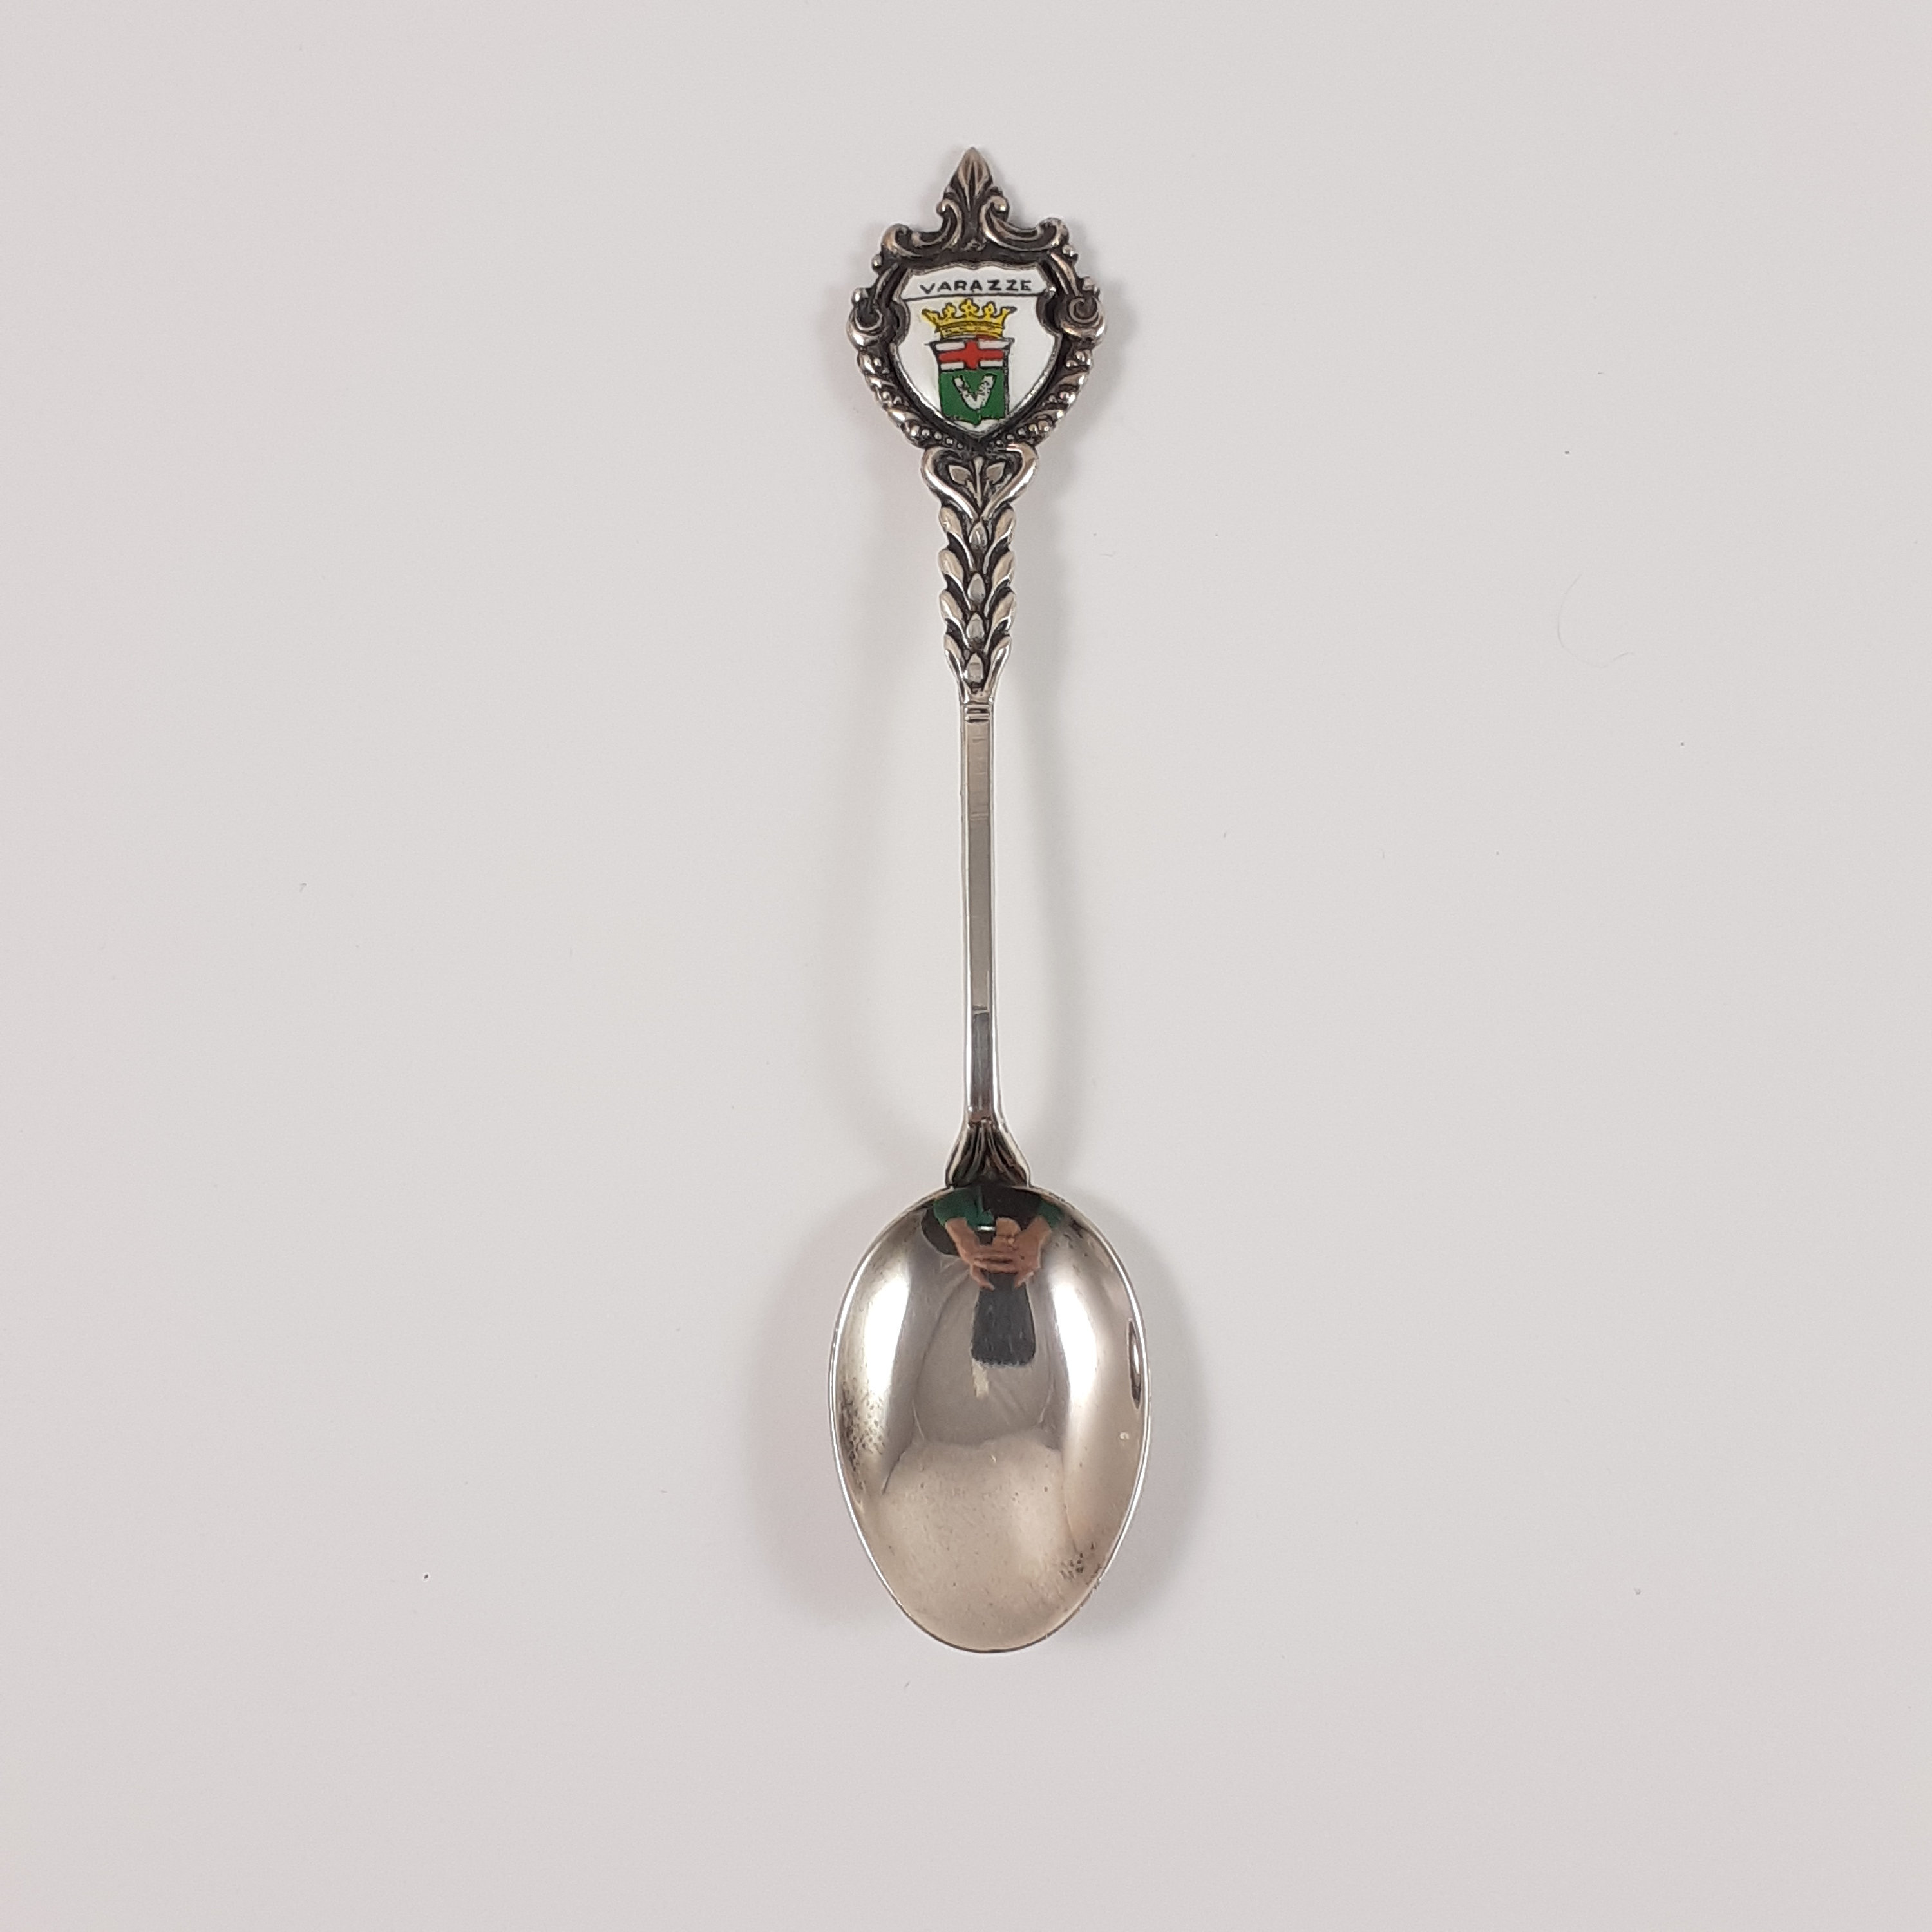 800 Silver Souvenir Spoon, Verazze Italy, Vintage Silverware, 4 and 